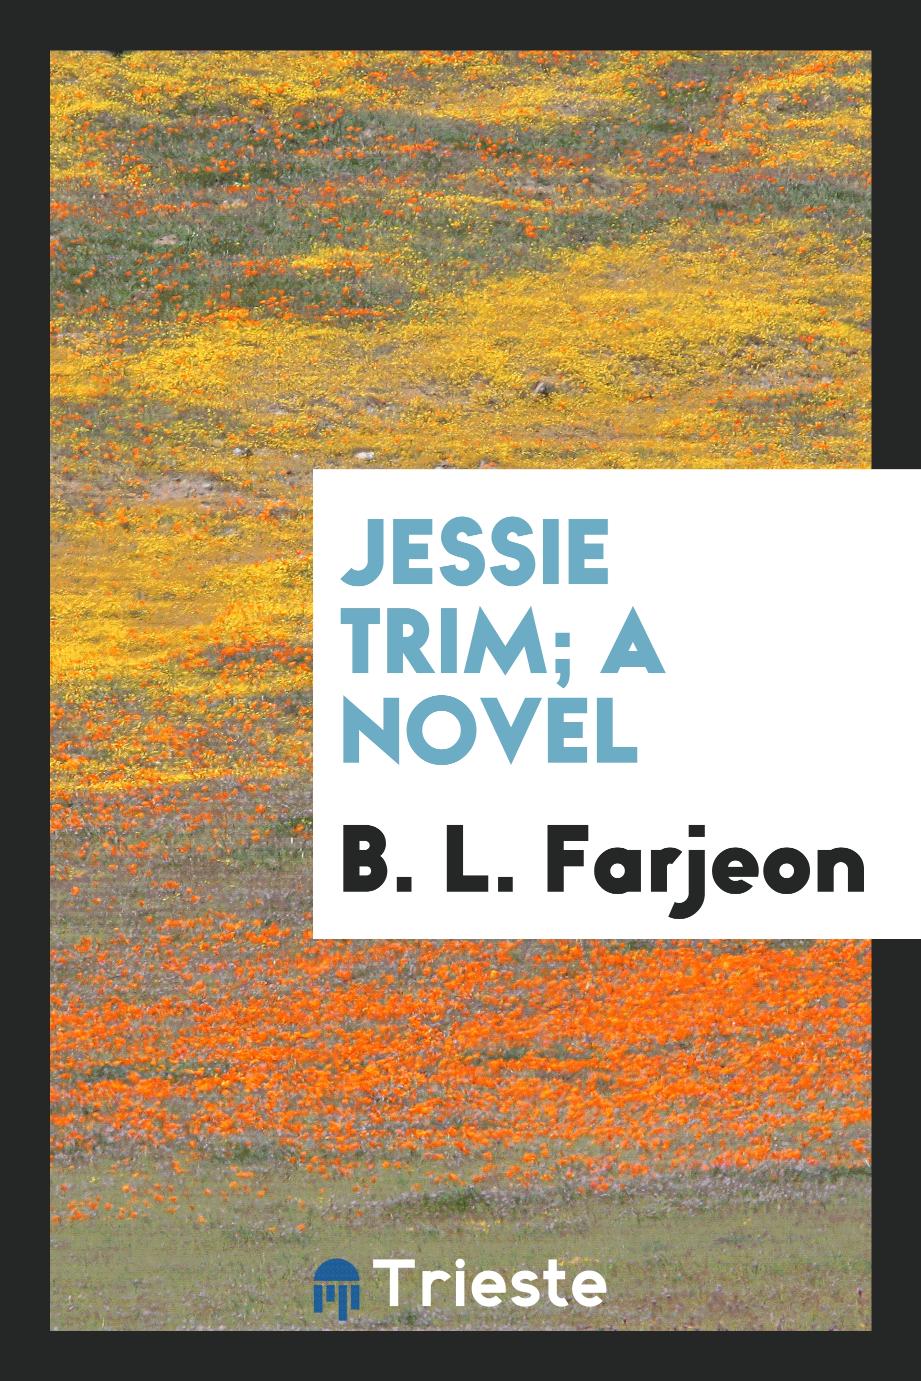 Jessie Trim; a novel